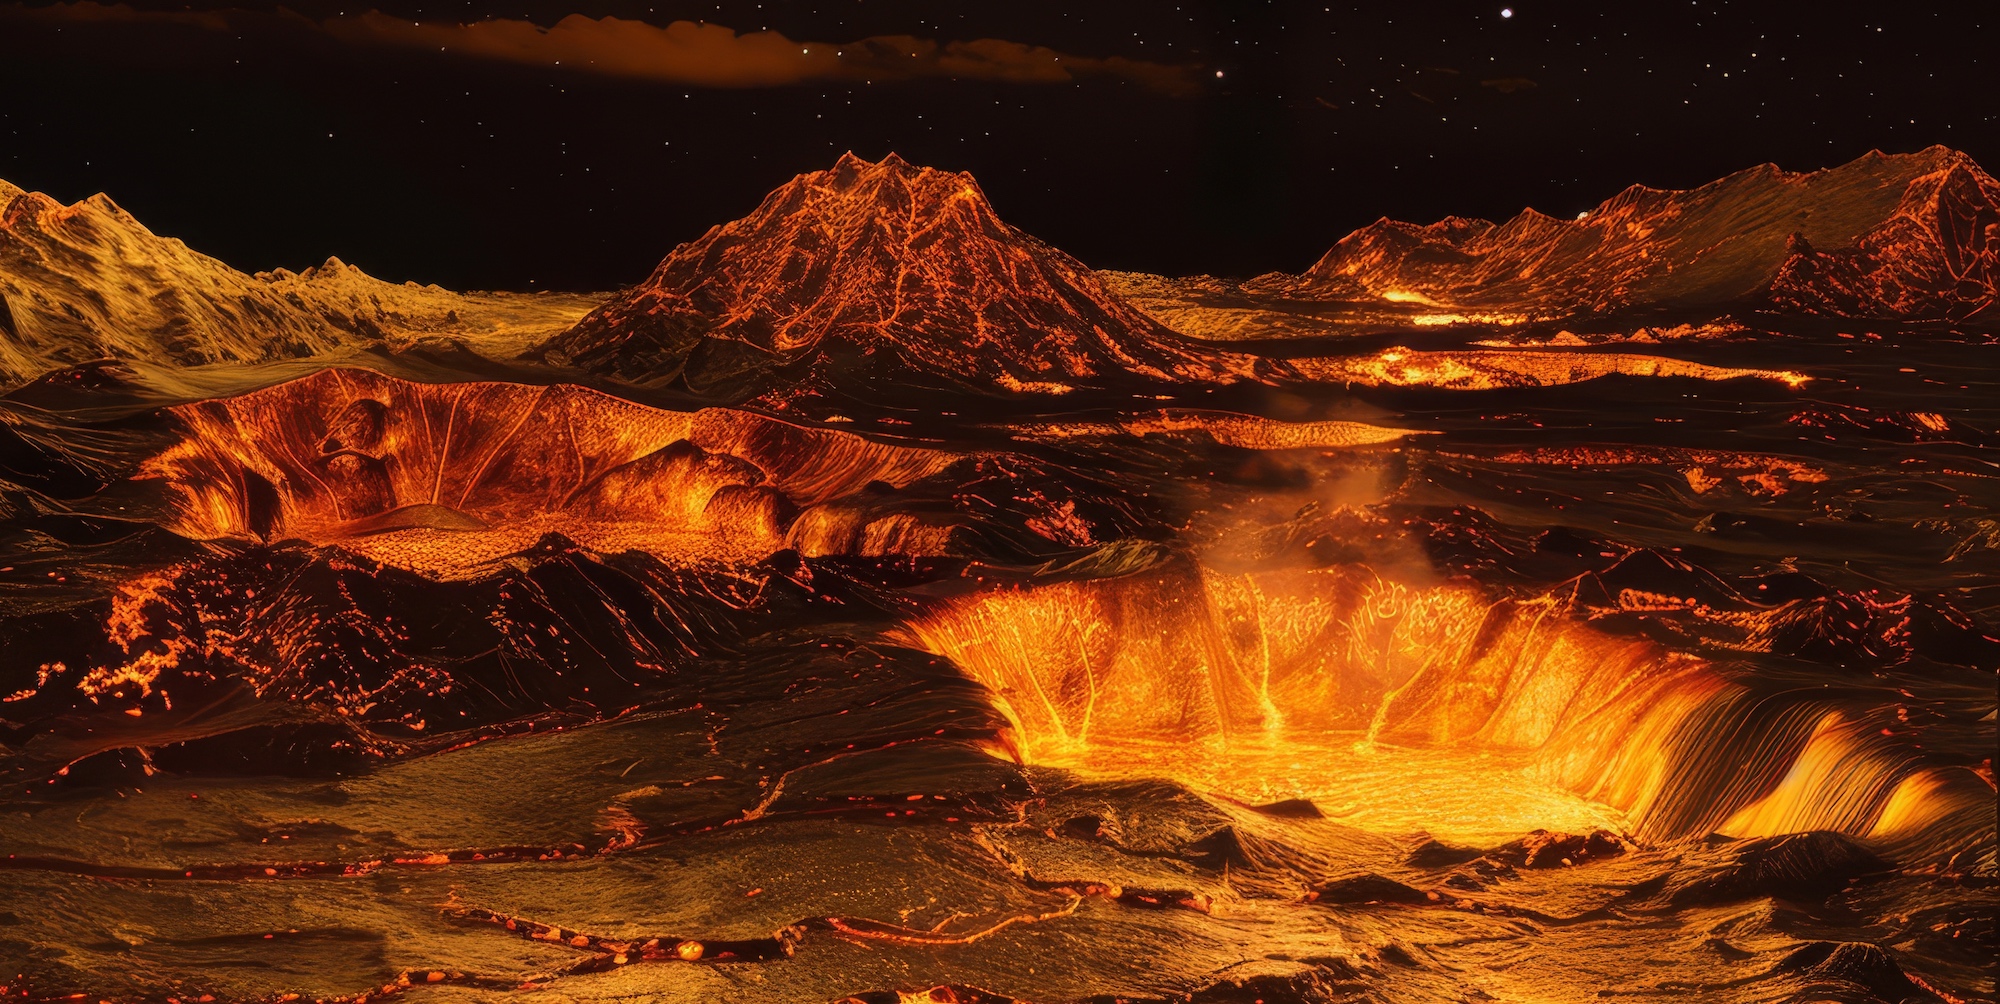 Image générée à l'aide d'une IA d'une éruption sur Vénus. © RDO, Adobe Stock